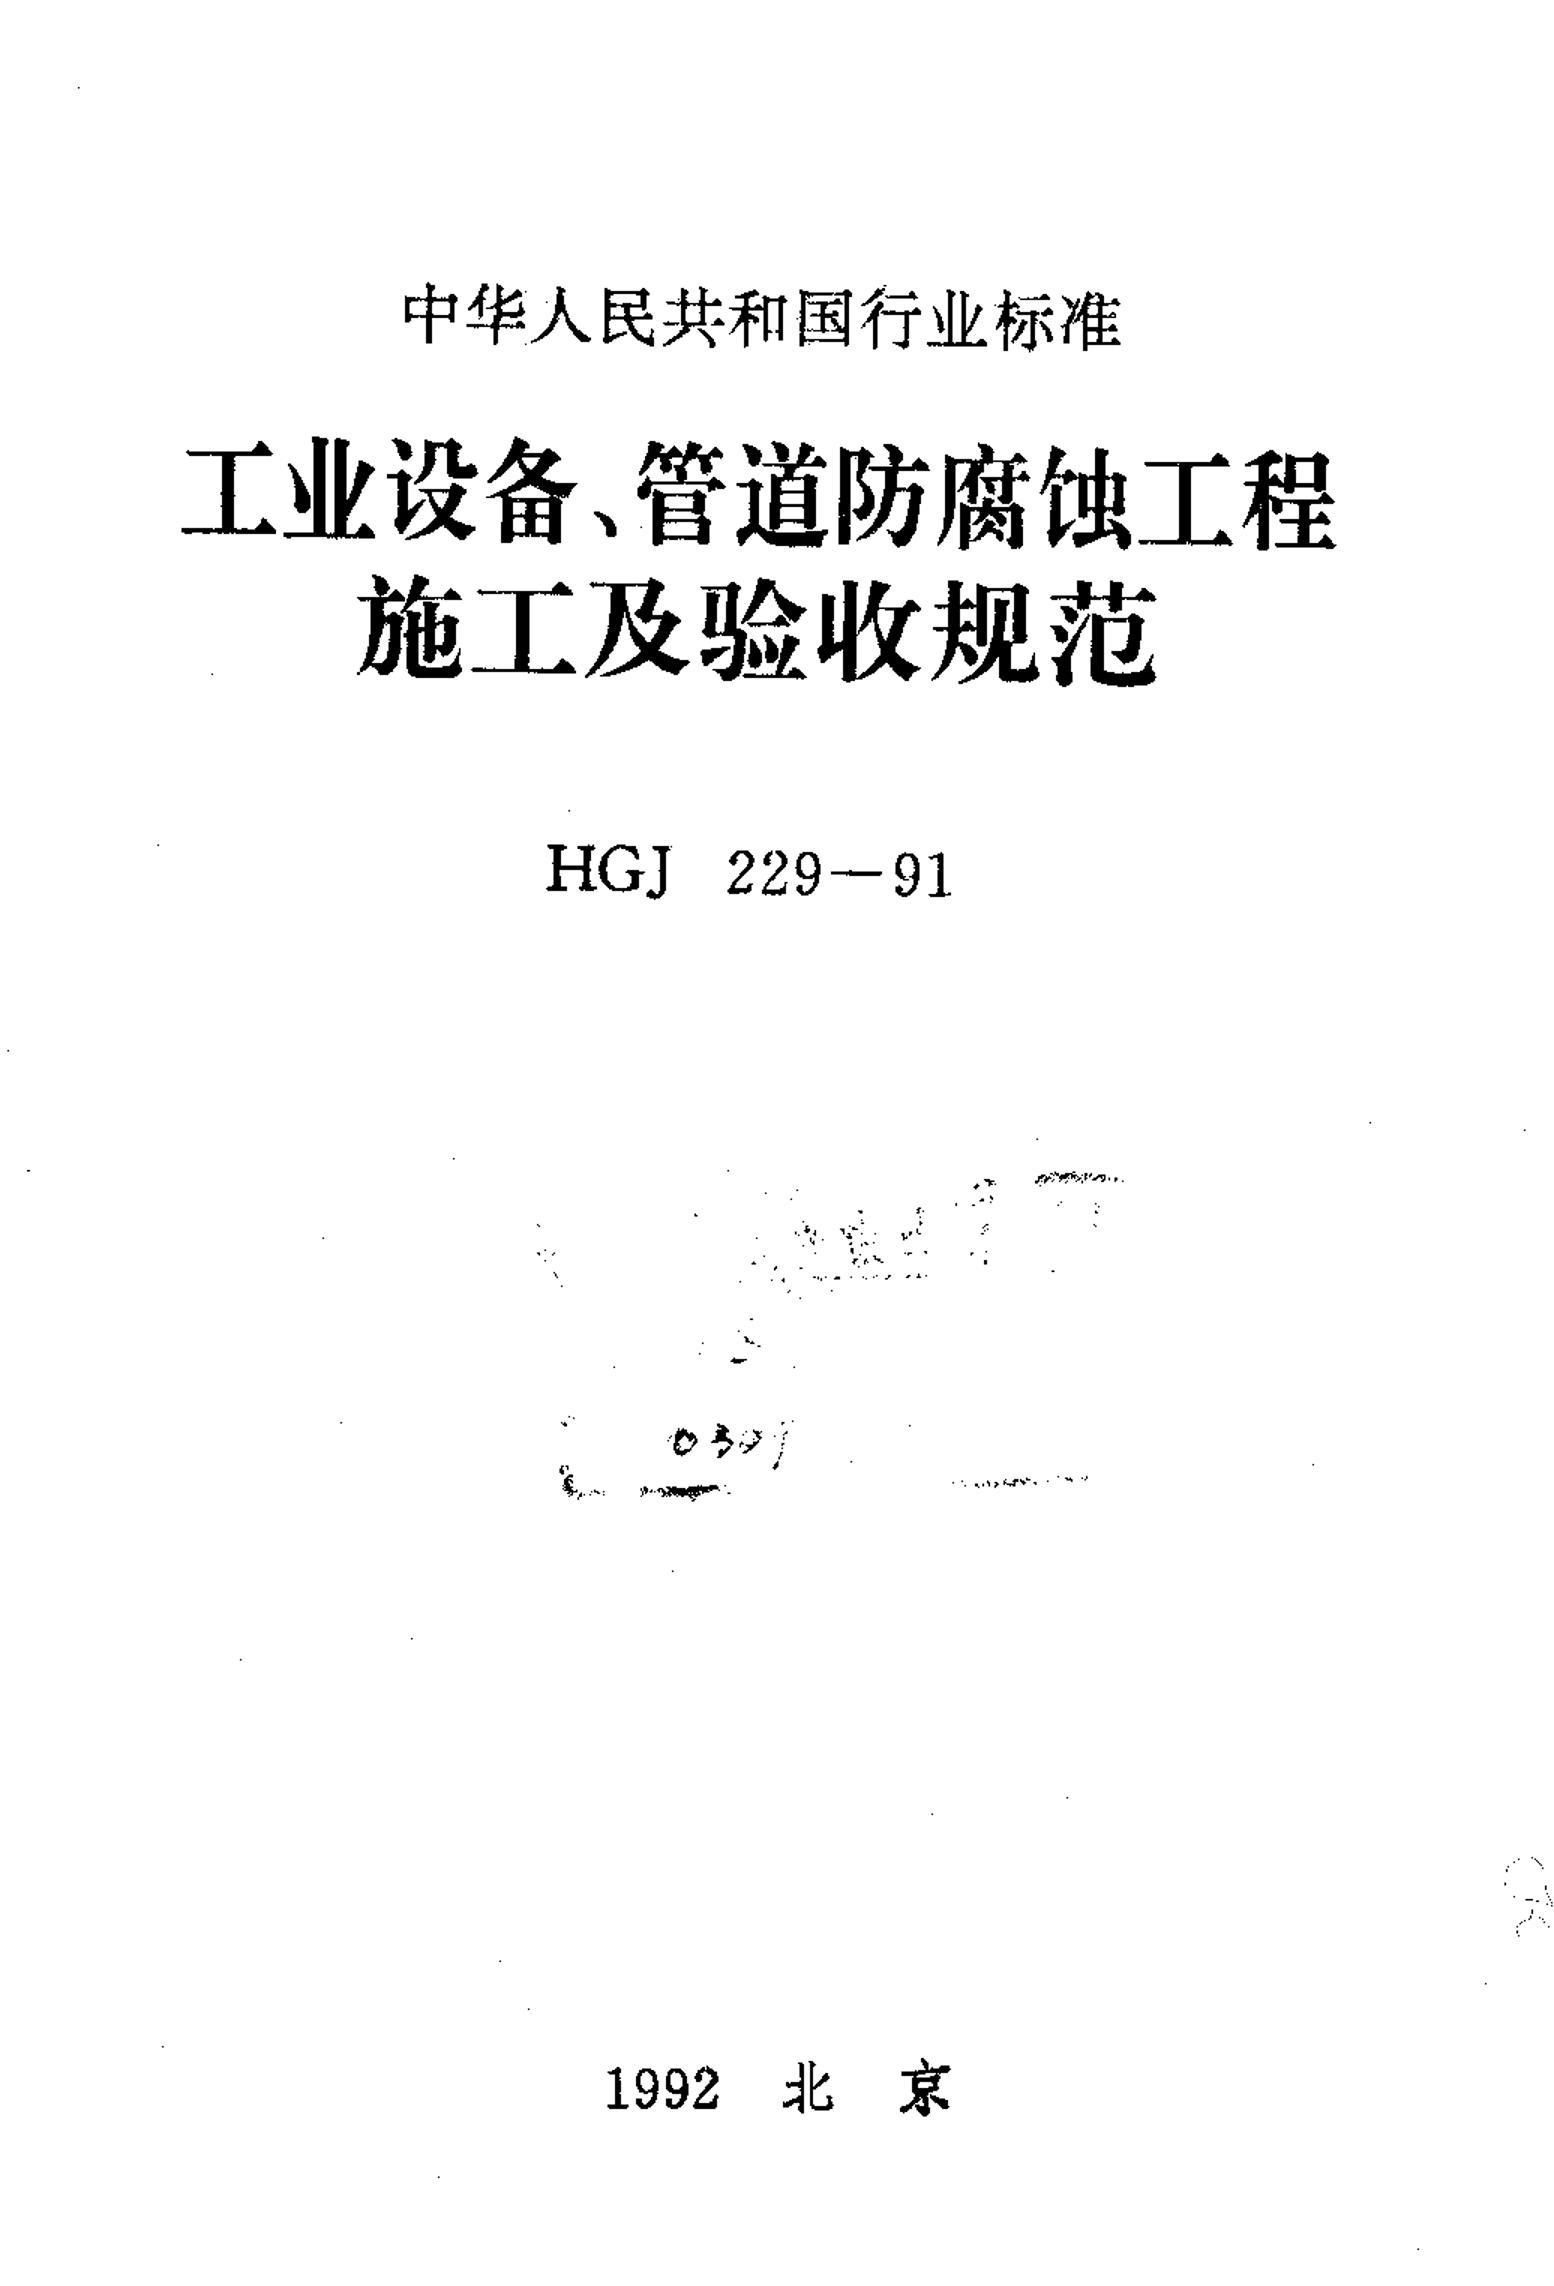 HGJ 229-1991 豸ܵʴʩչ淶.pdf1ҳ